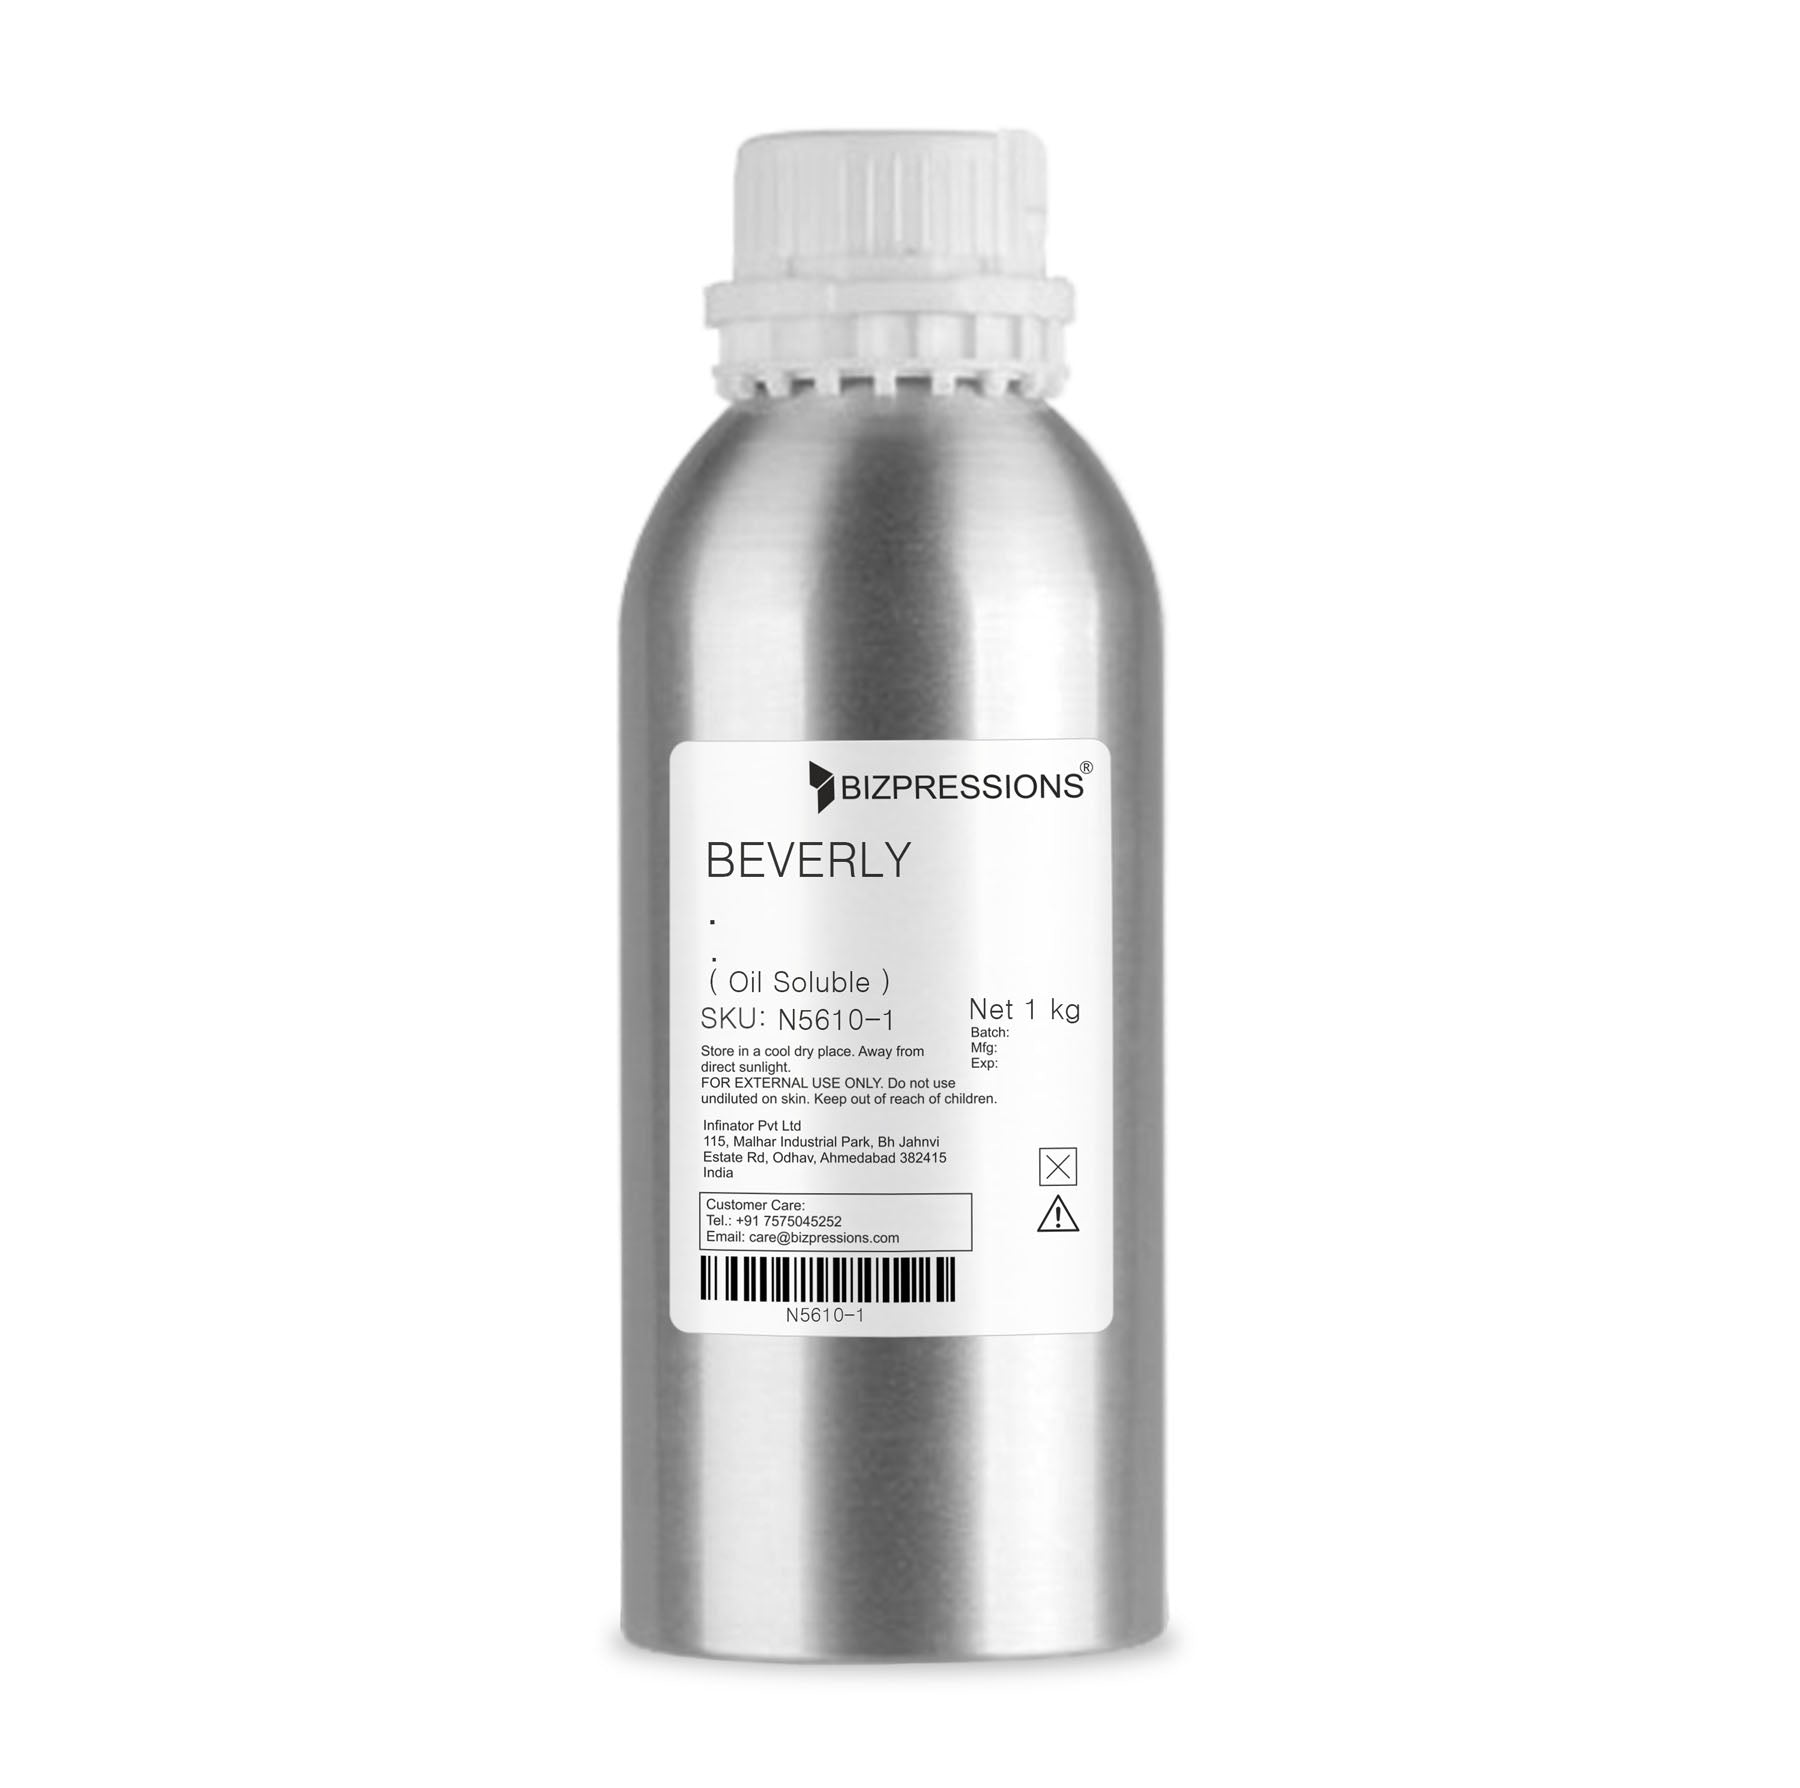 BEVERLY - Fragrance ( Oil Soluble ) - 1 kg